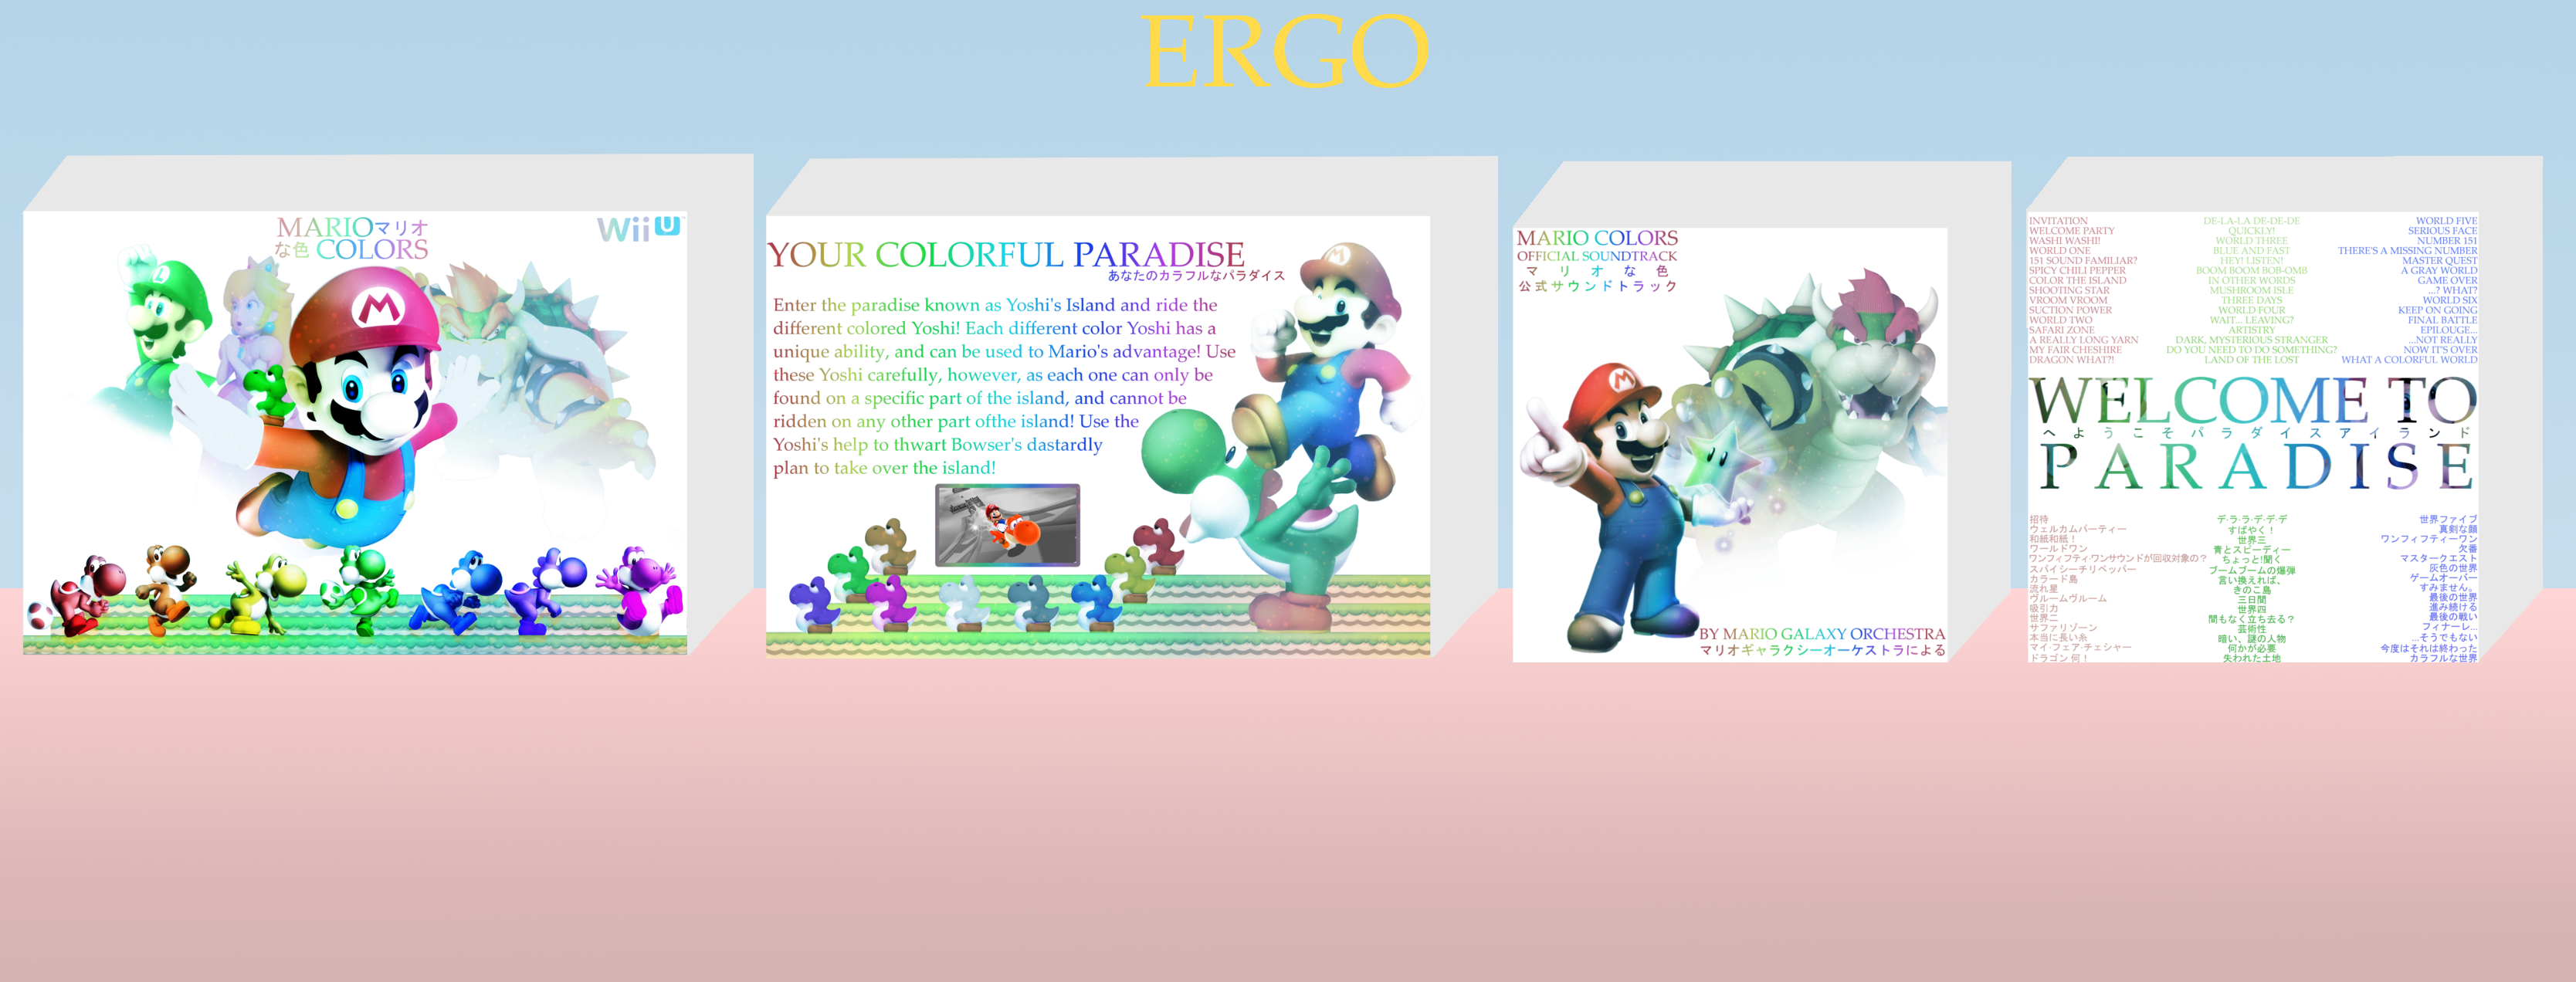 Mario Colors box cover